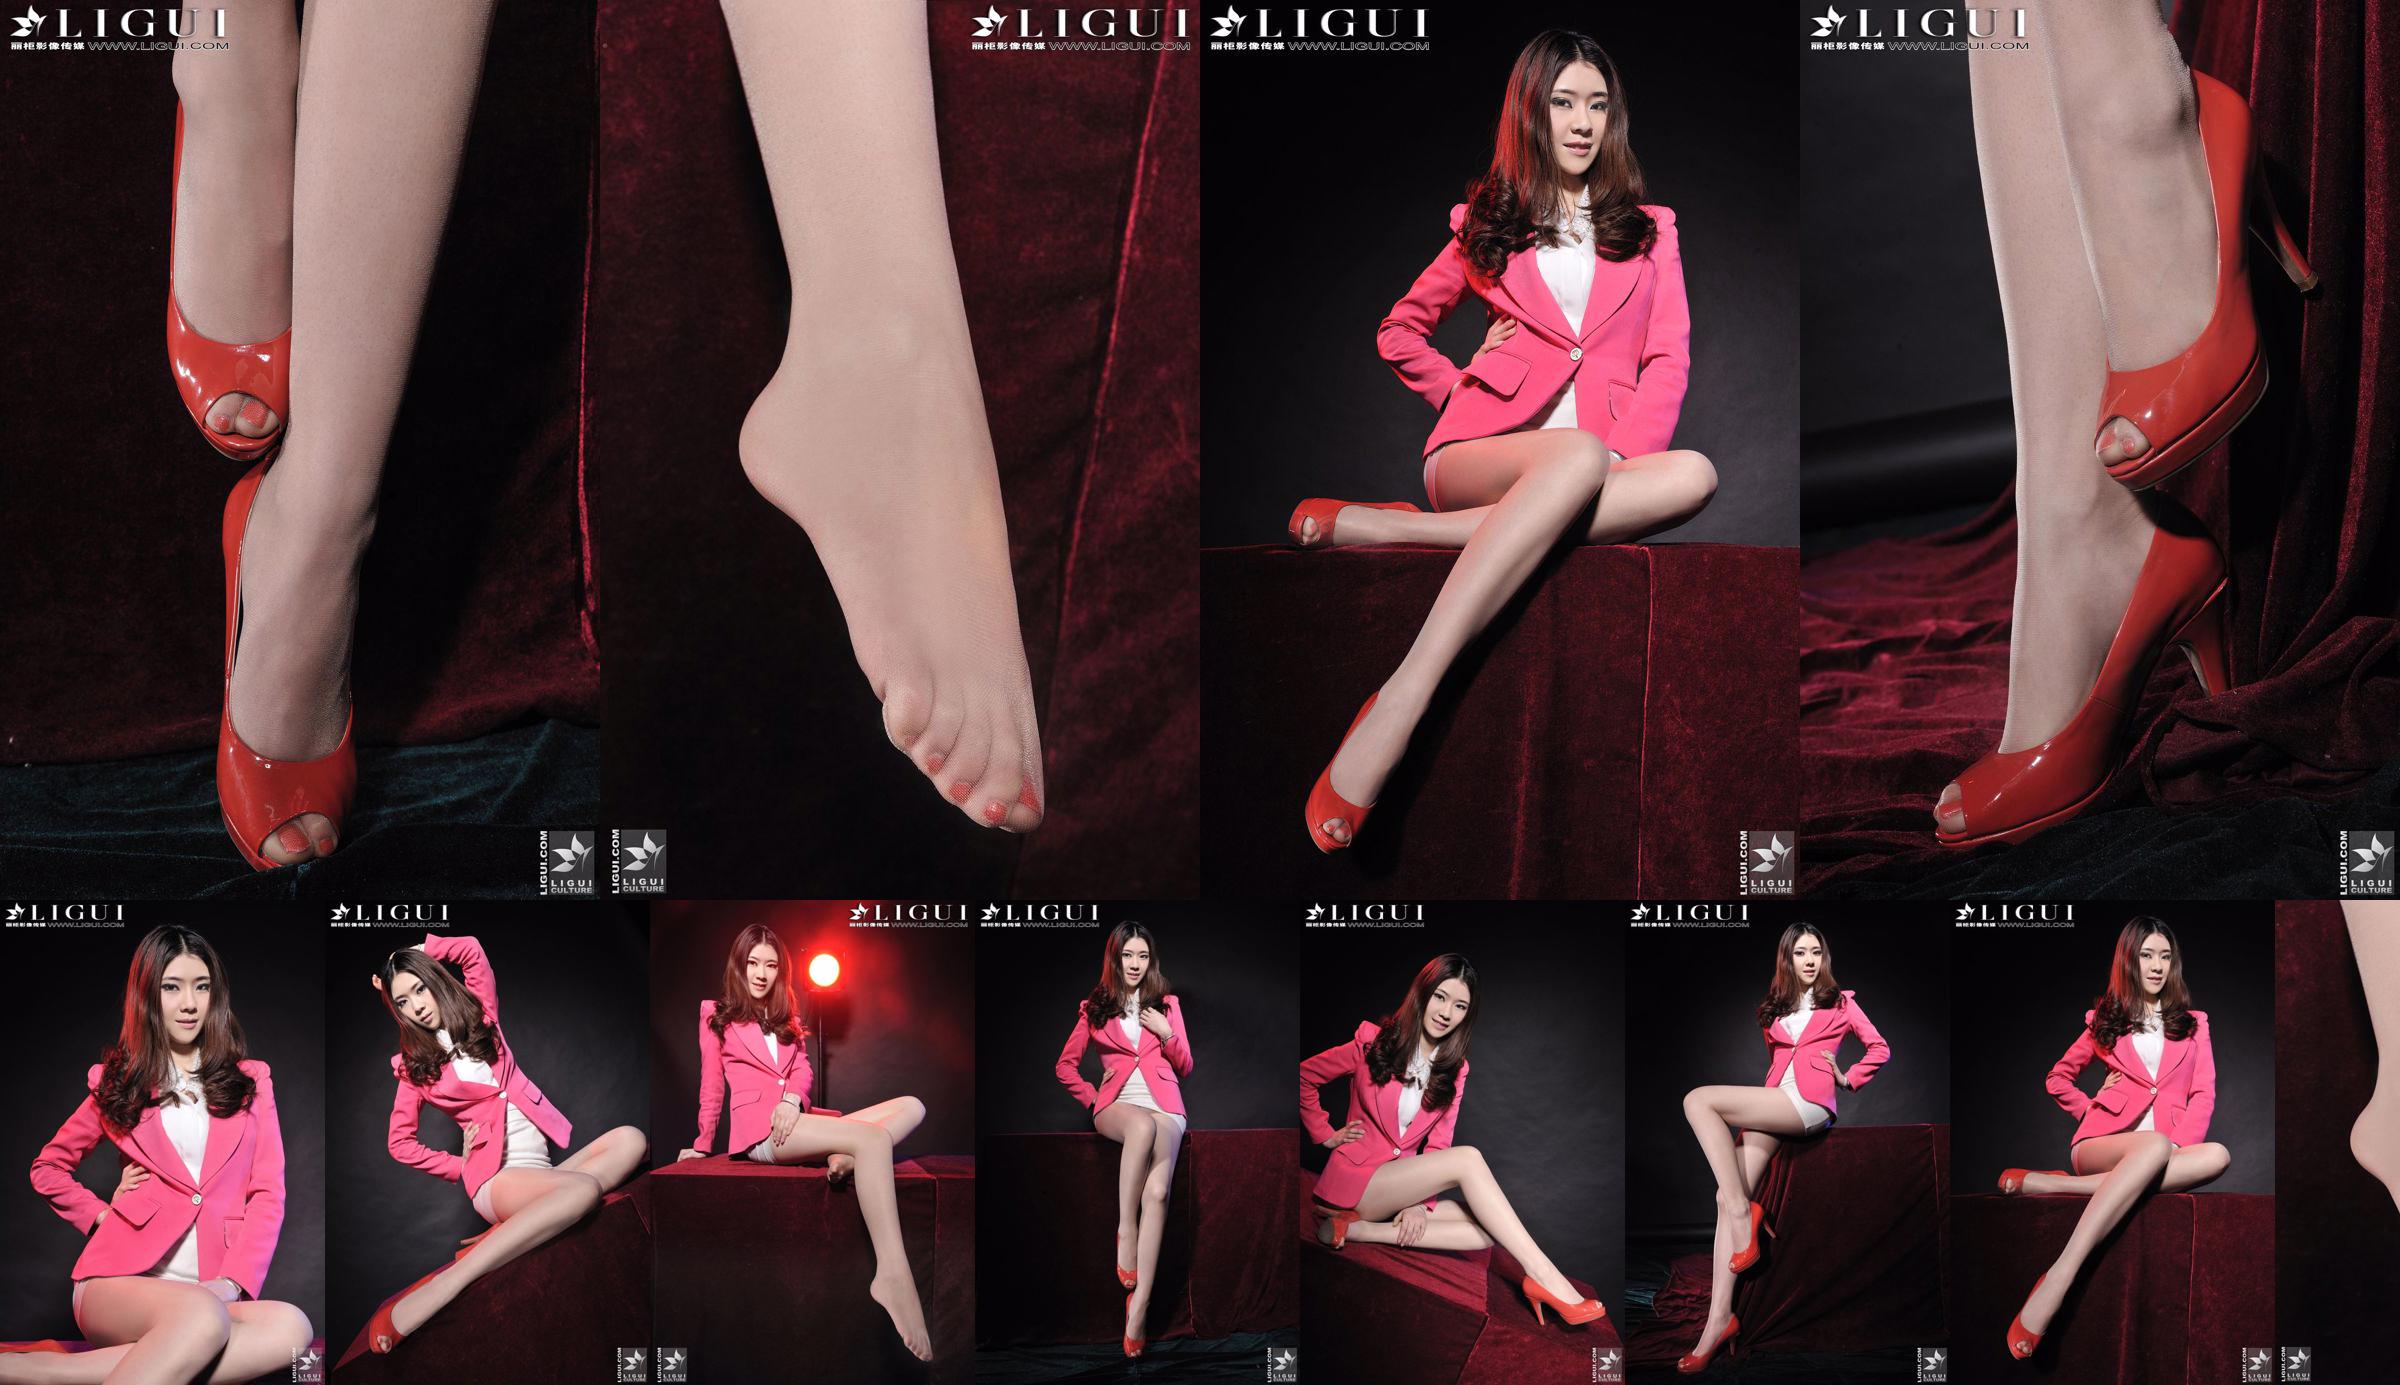 นางแบบ Chenchen "สาวส้นสูงสีแดง" [丽柜 LiGui] รูปถ่ายขาสวยและเท้าหยก No.eaf2bd หน้า 2